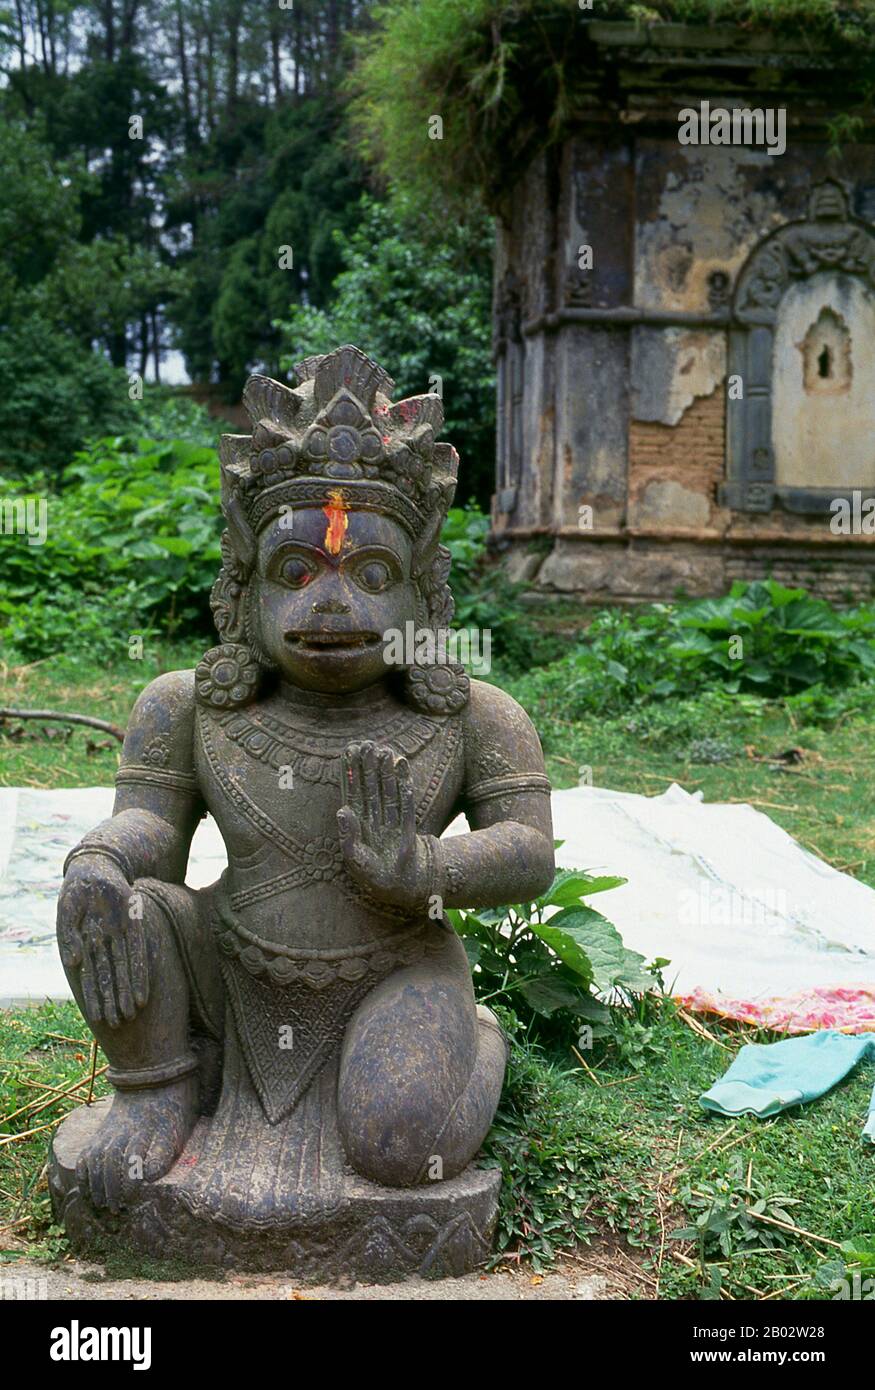 La déité hindoue Hanuman est un dévoté ardent de Rama, un personnage central dans l'épopée indienne Ramayana. Général parmi les vanaras, une race de type singe de citadins forestiers, Hanuman est une incarnation du divin et disciple du Seigneur Sri Rama dans la lutte contre le démon roi Ravana. Banque D'Images